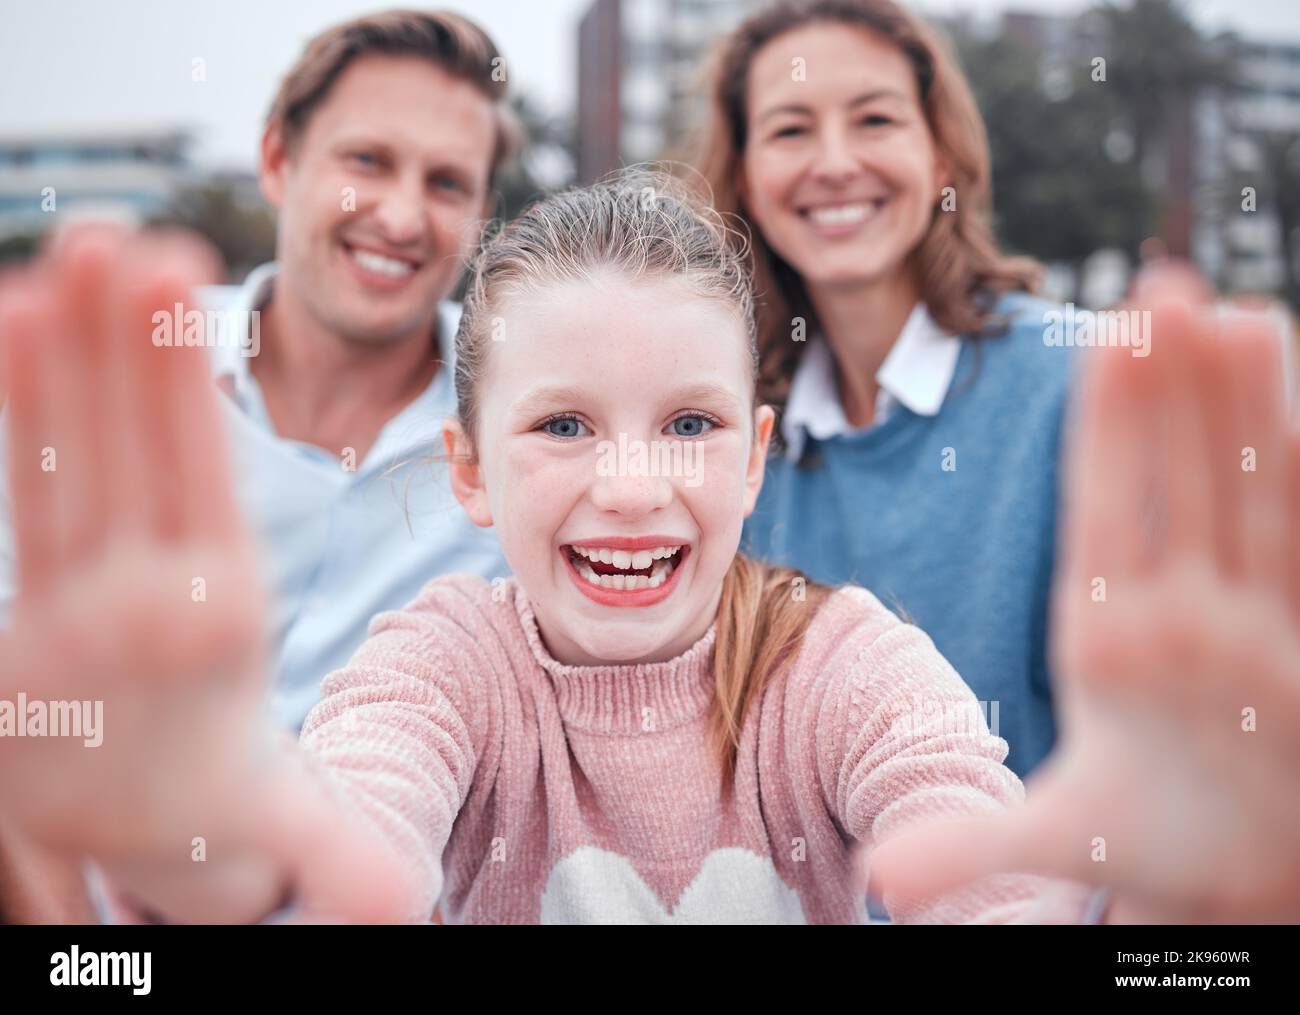 Ragazza, cornice e famiglia per selfie con sorriso, ritratto o felice in città, metropolitana o città al parco, fumetto o bonding. Madre, padre o bambino con Foto Stock